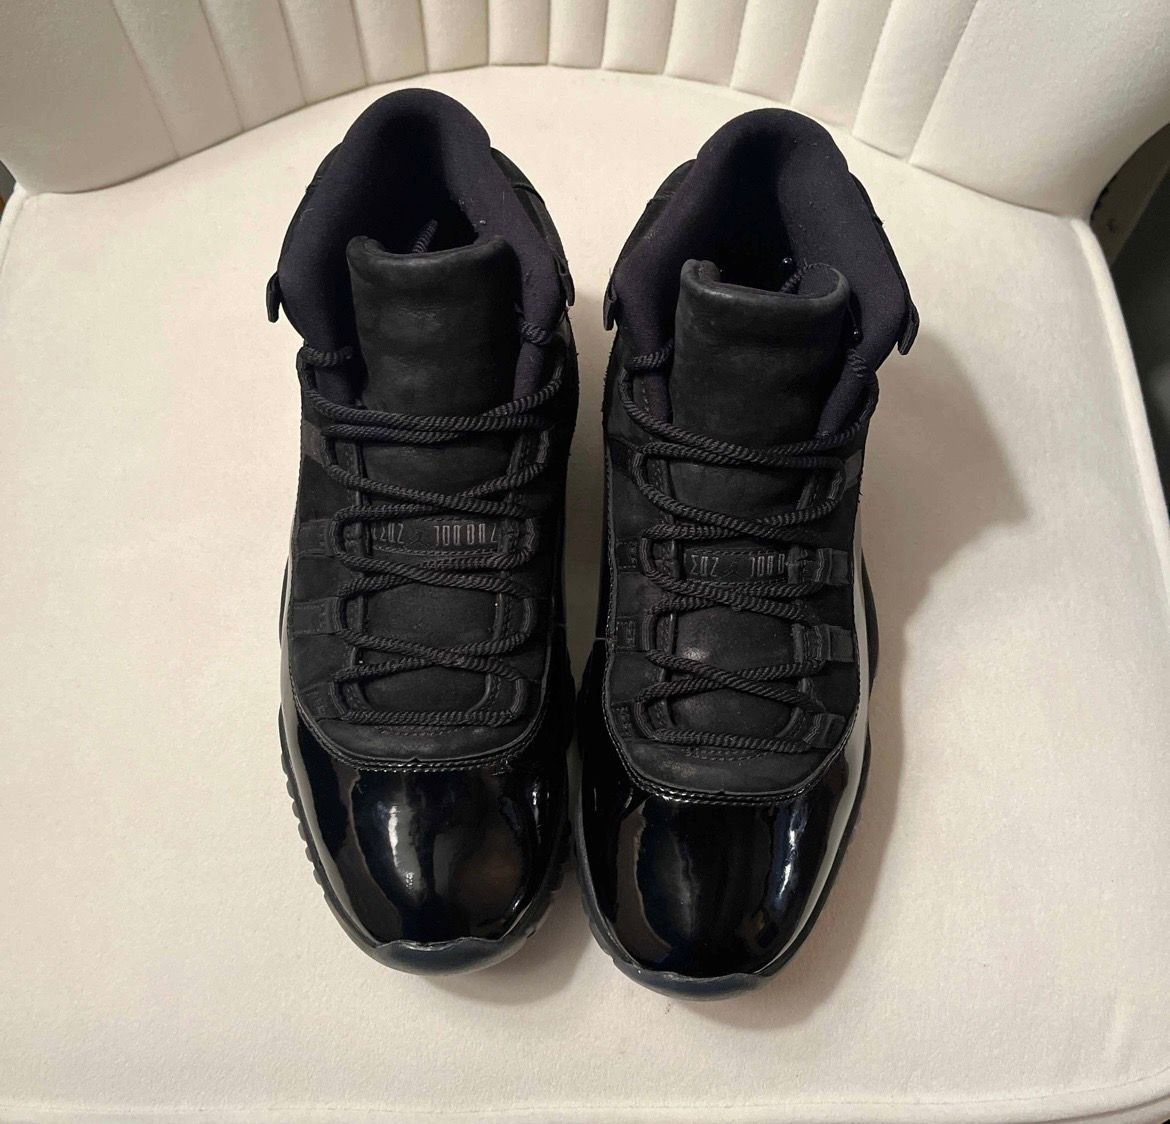 Pre-owned Jordan Brand Air Jordan 11 Retro ‘cap And Gown' Shoes In Black